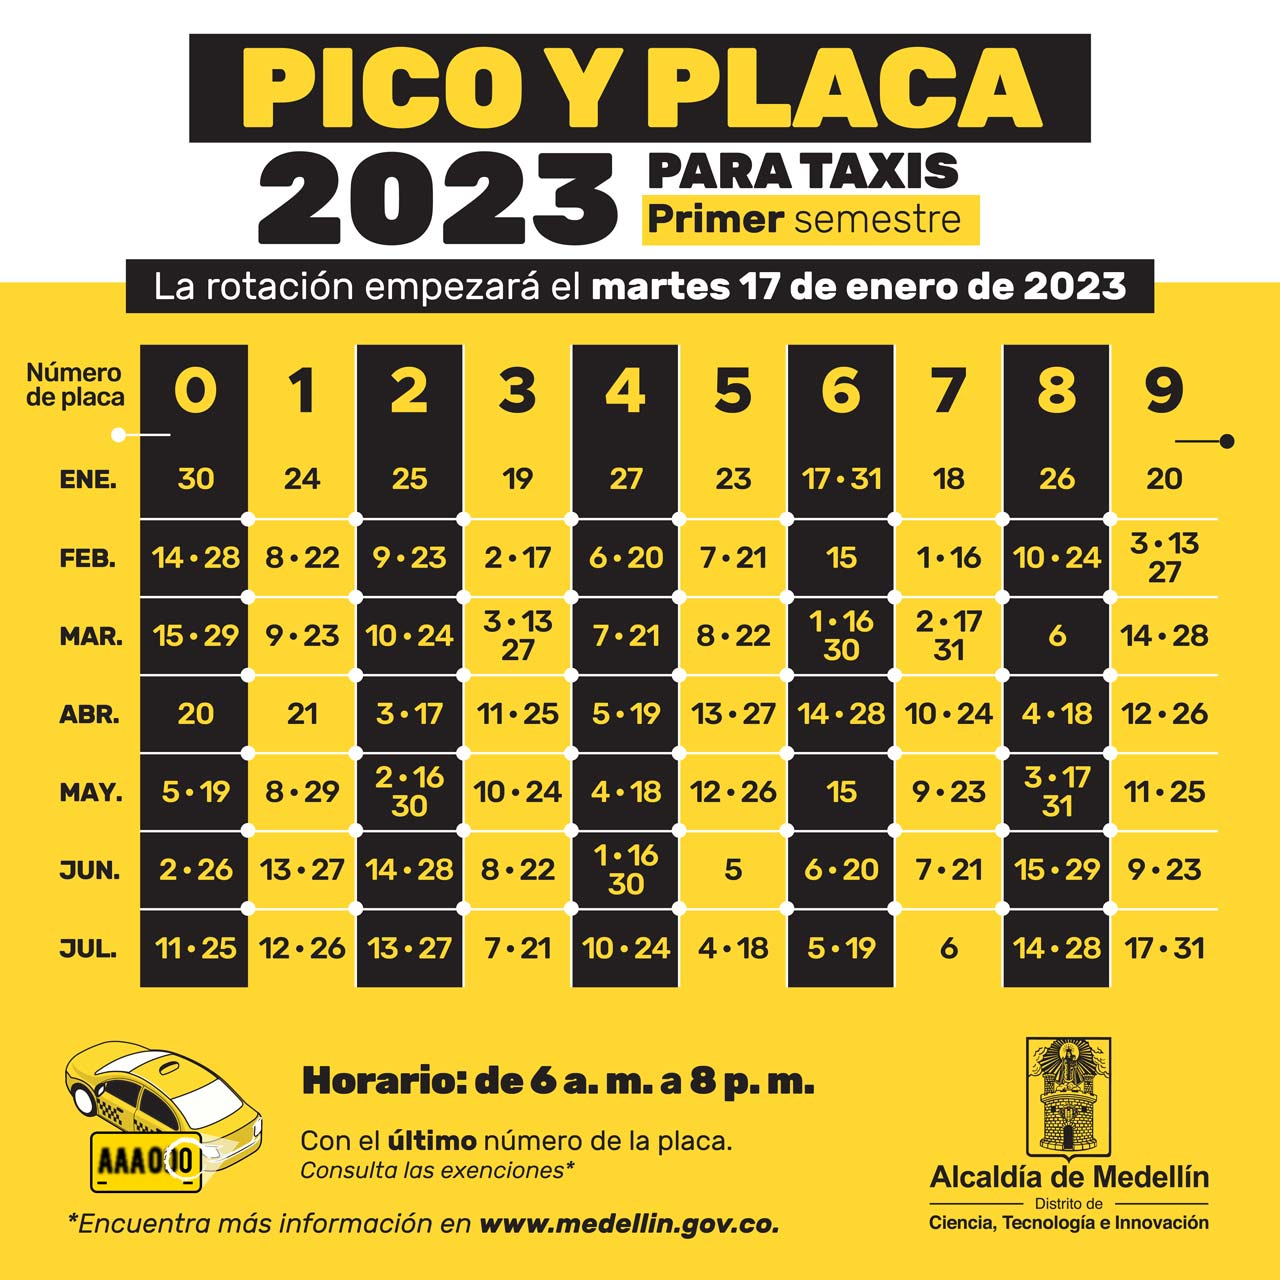 Pico y placa 2023 para taxis